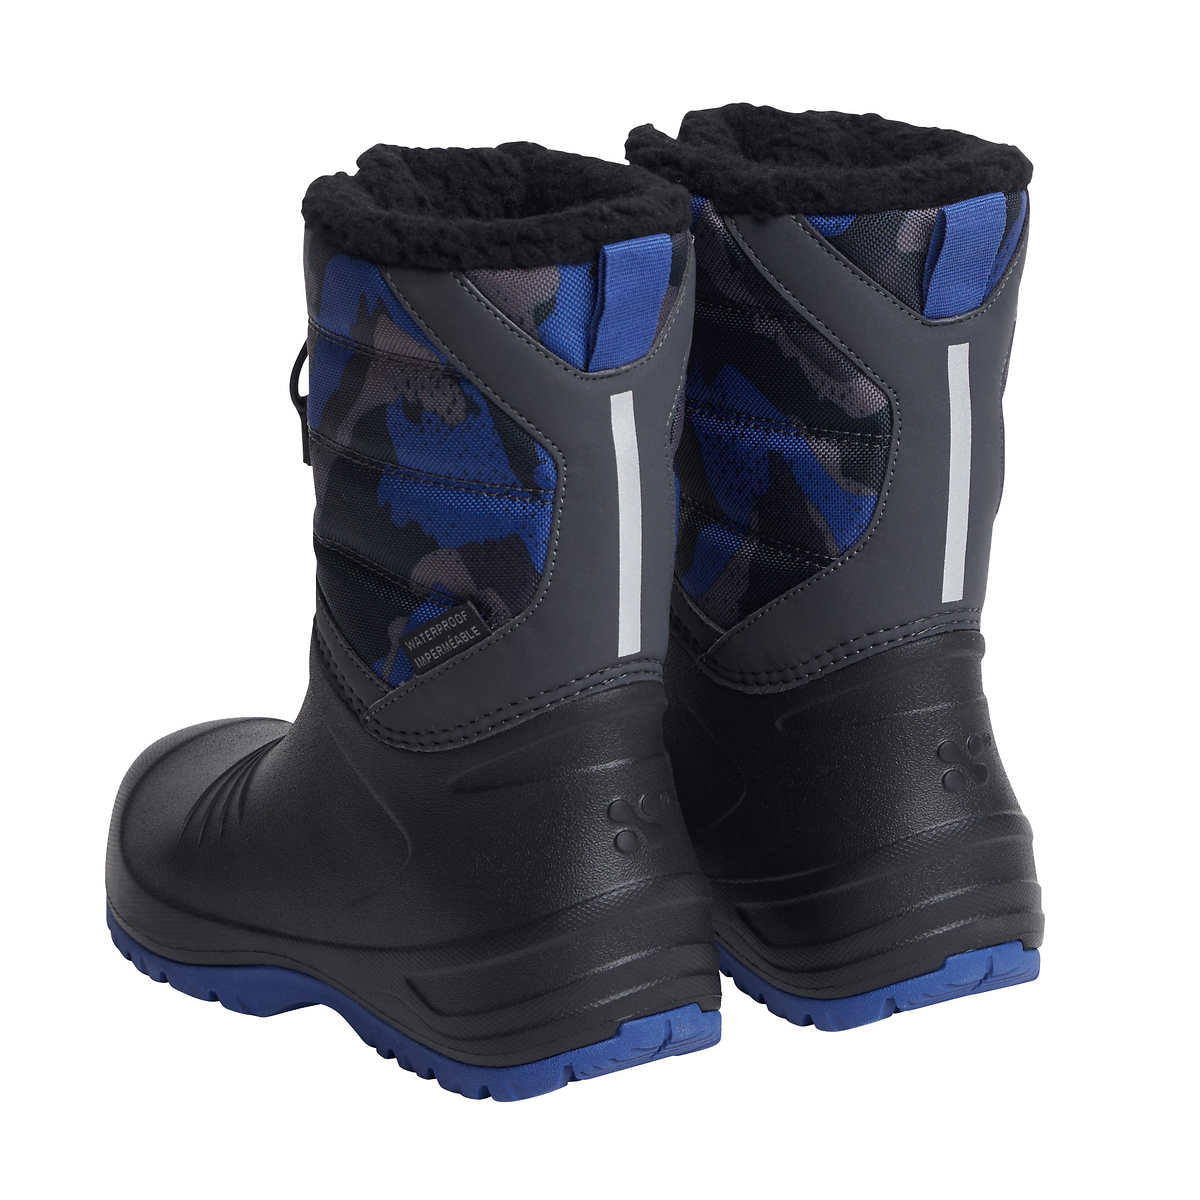 xmtn-botte-hivers-enfant-kids-winter-boots-6